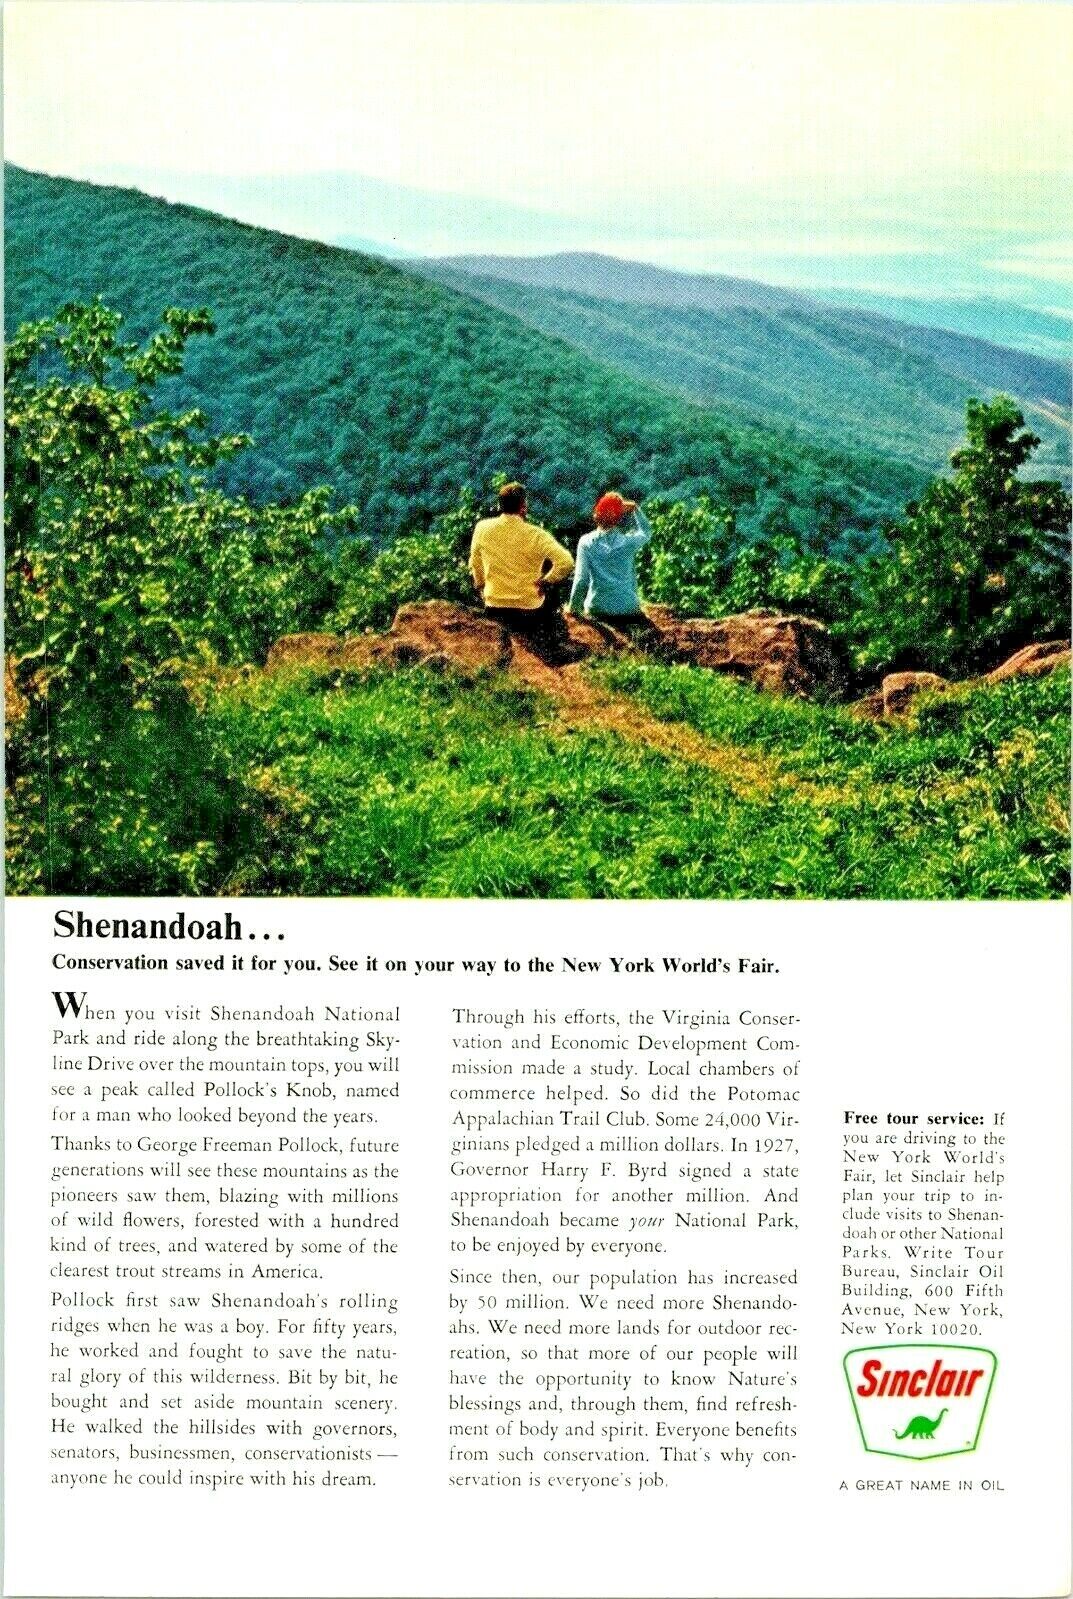 Vintage 1964 Sinclair Oil Couple Views The Beautiful Shenandoah  Advertisement